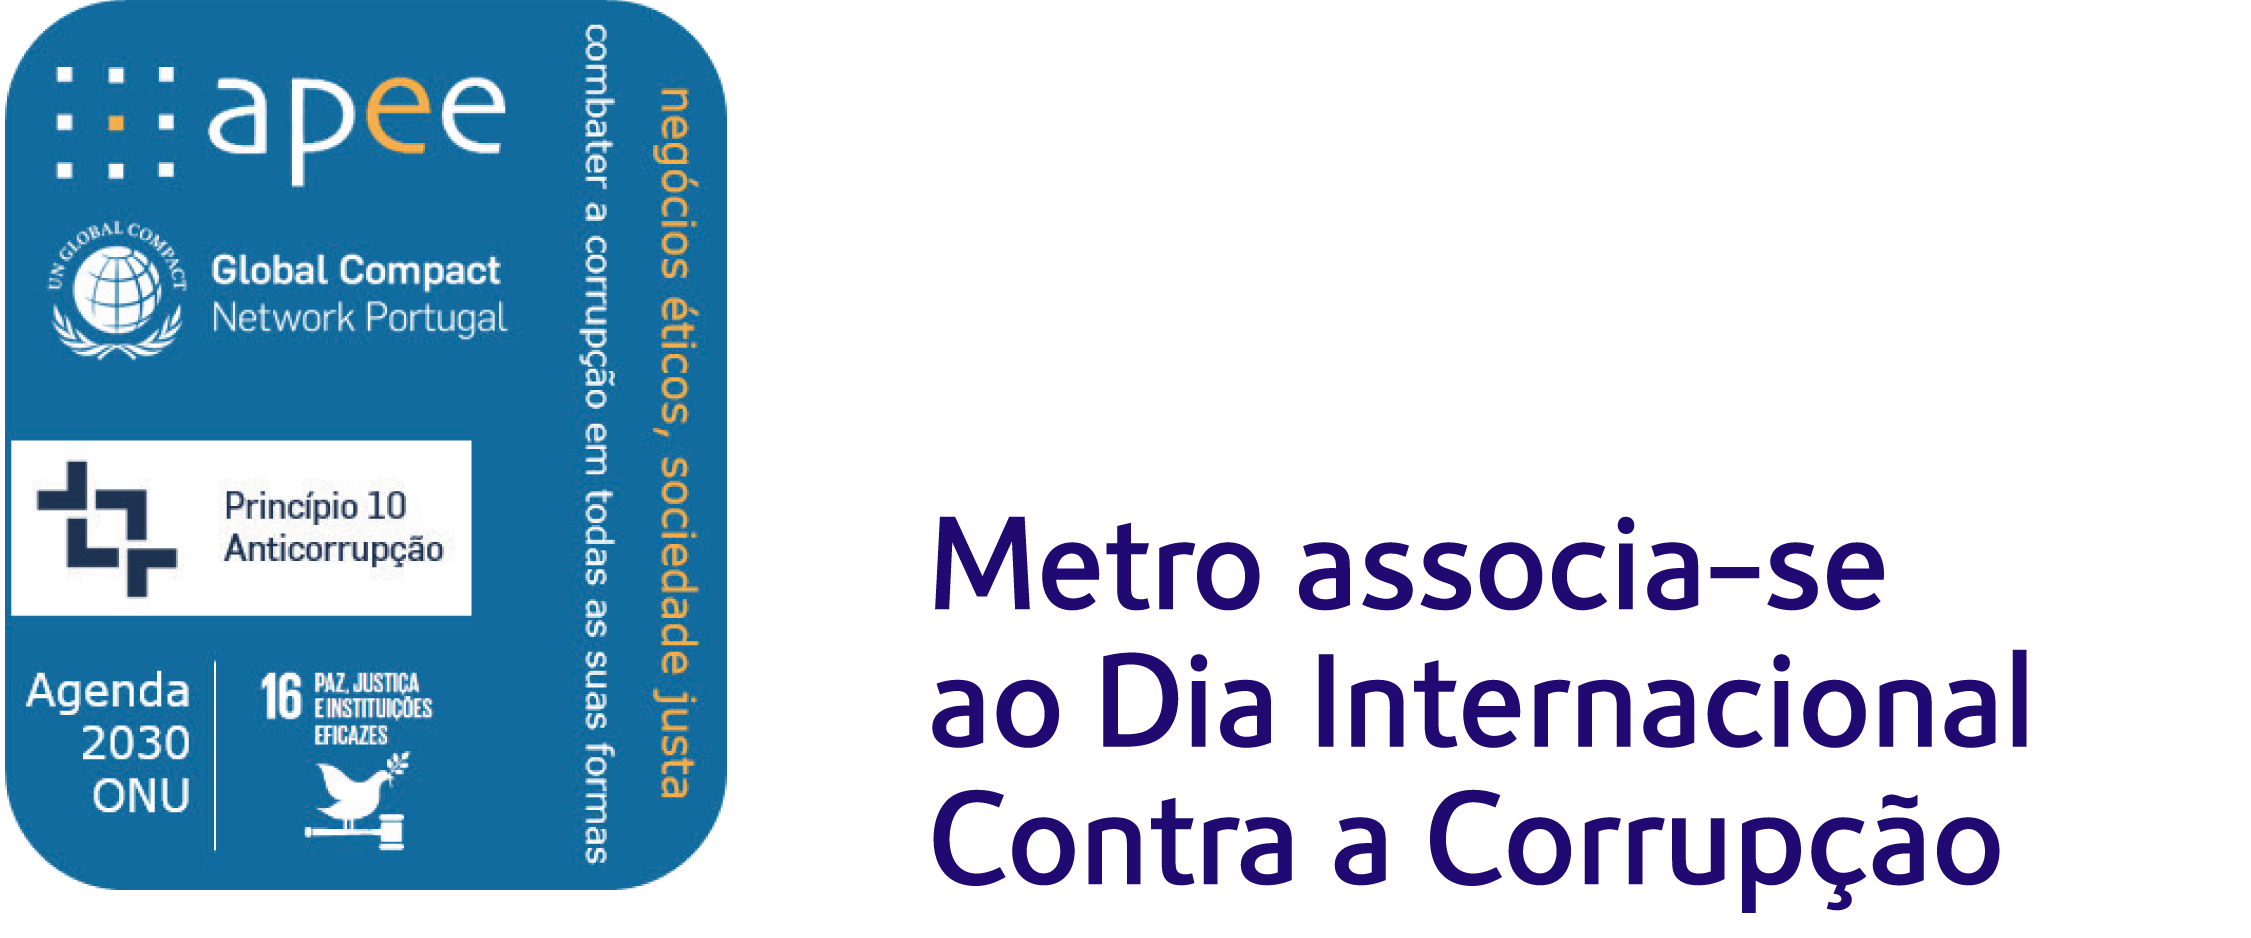 Metro associa-se ao Dia Internacional Contra a Corrupção